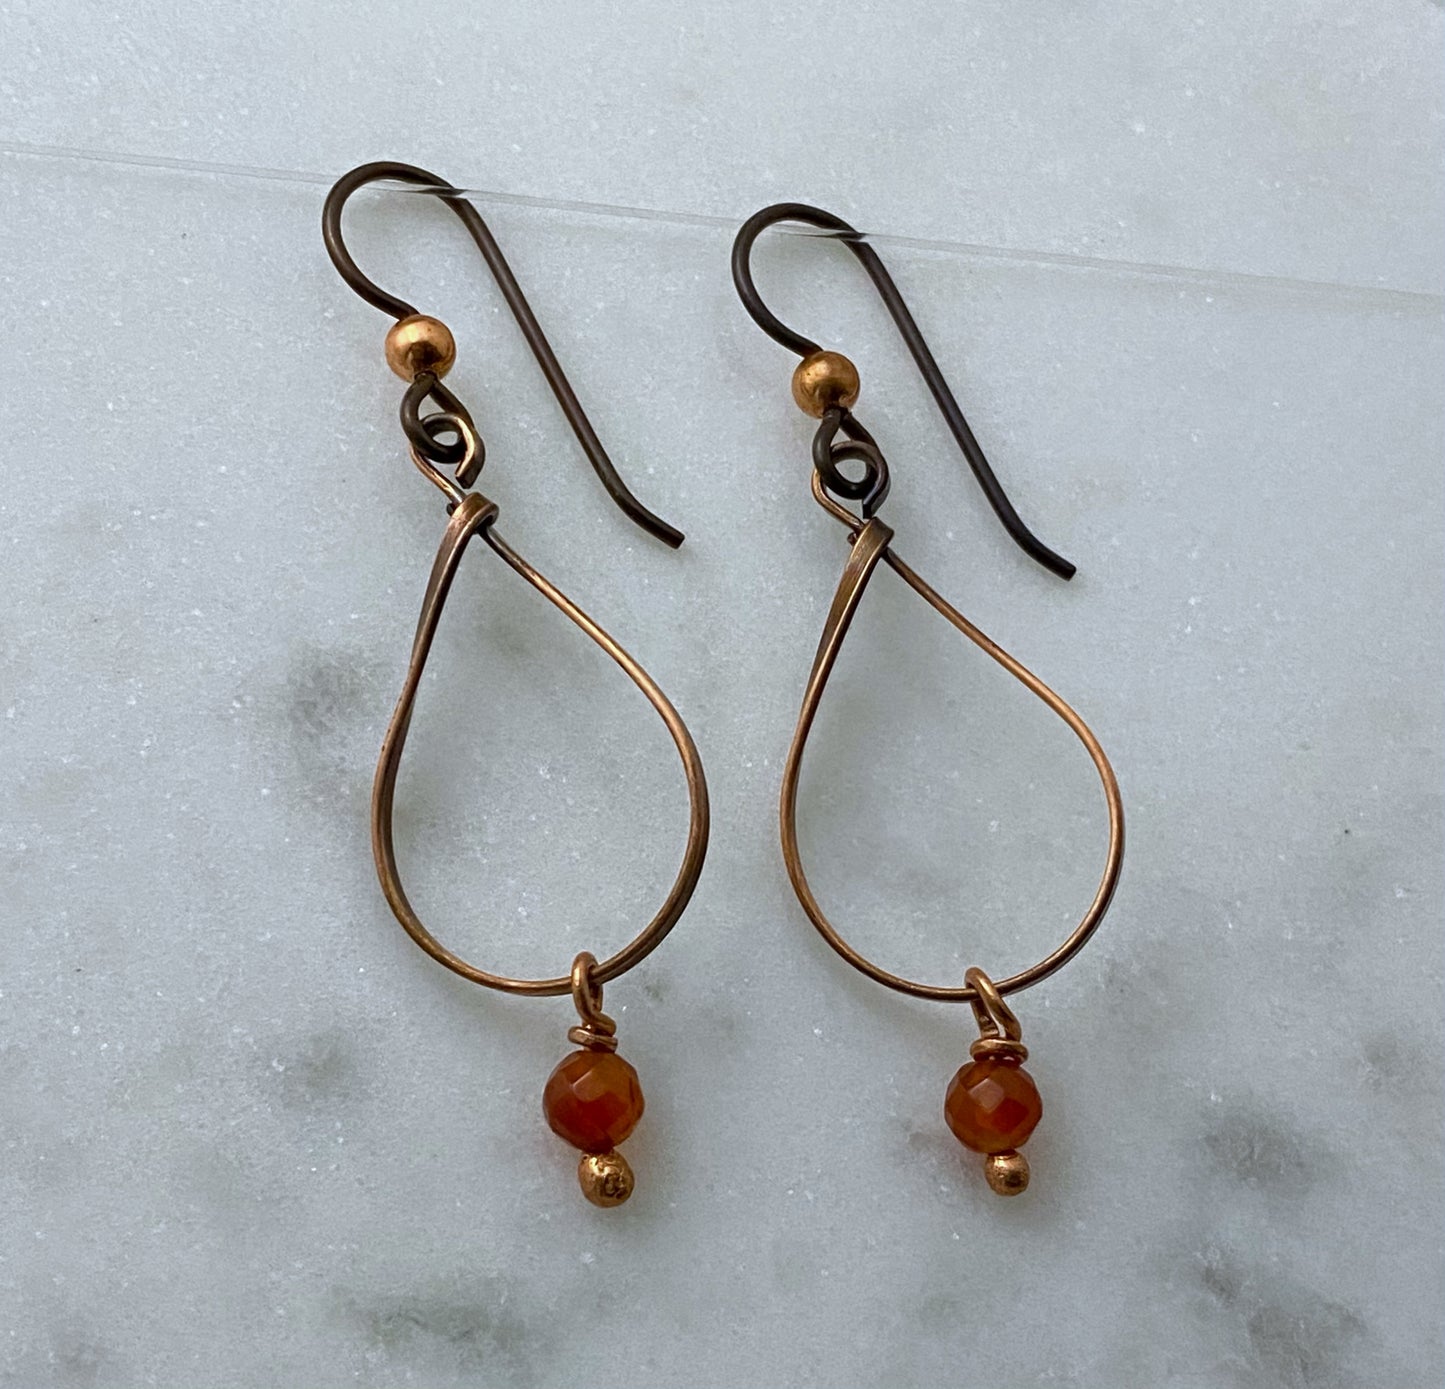 Copper teardrop earrings with carnelian